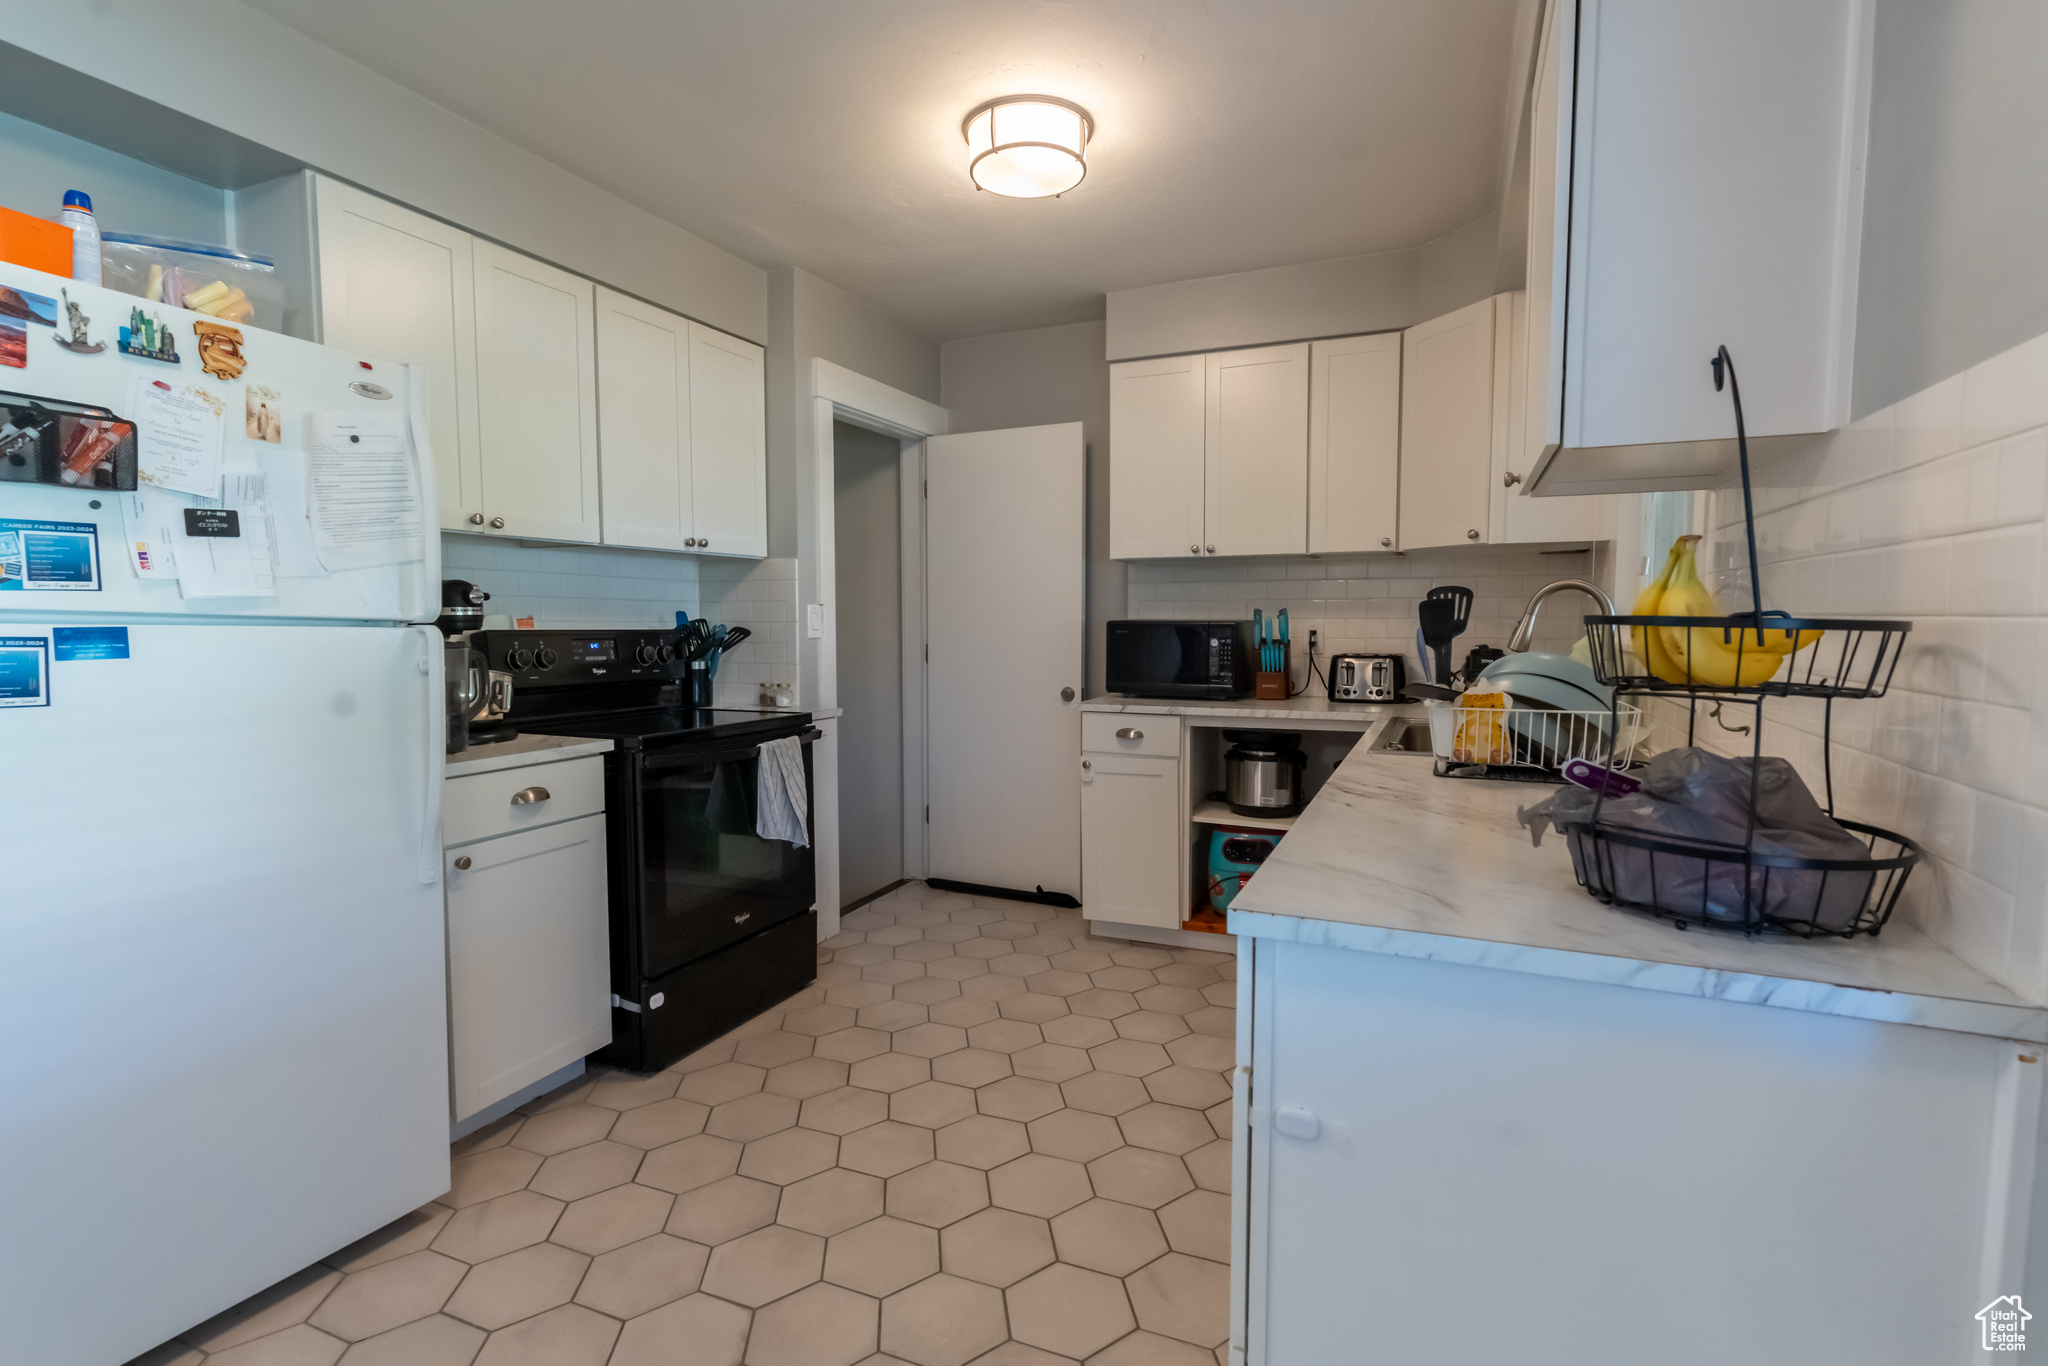 Kitchen with tasteful backsplash, white cabinets, black appliances, and light tile flooring